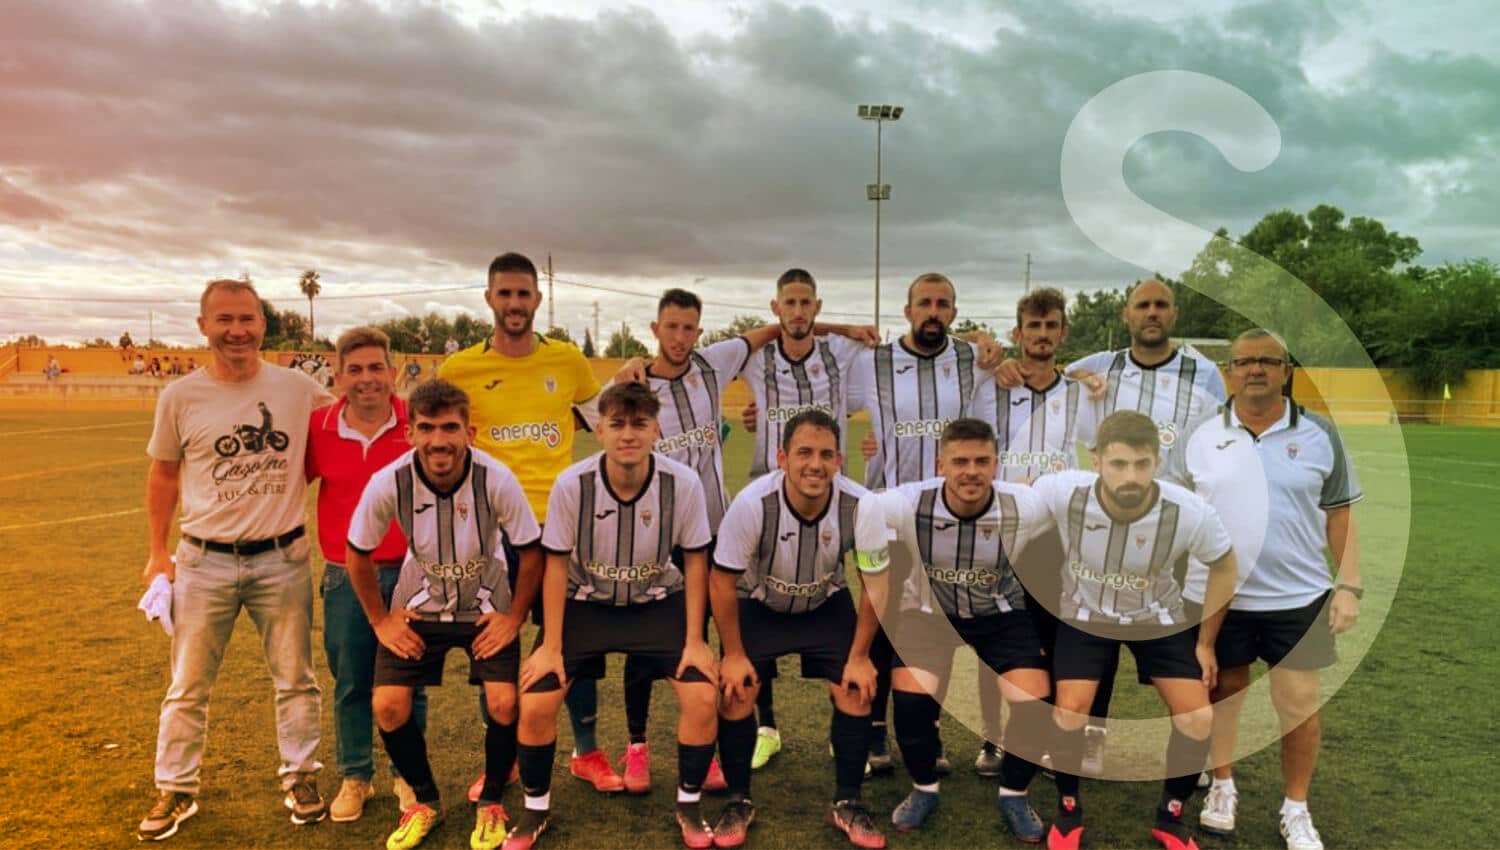 Club Deportivo Alcolea patrocinado por Energés